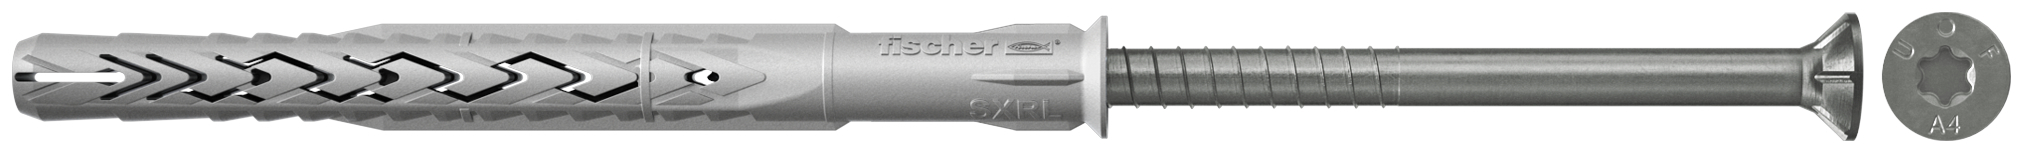 fischer Tasselli prolungati SXRL 10X180 T A4 (1 Pz.) Tassello prolungato in nylon con marcatura CE con vite premontata in acciaio inox A4, T.S.P. impronta torx.